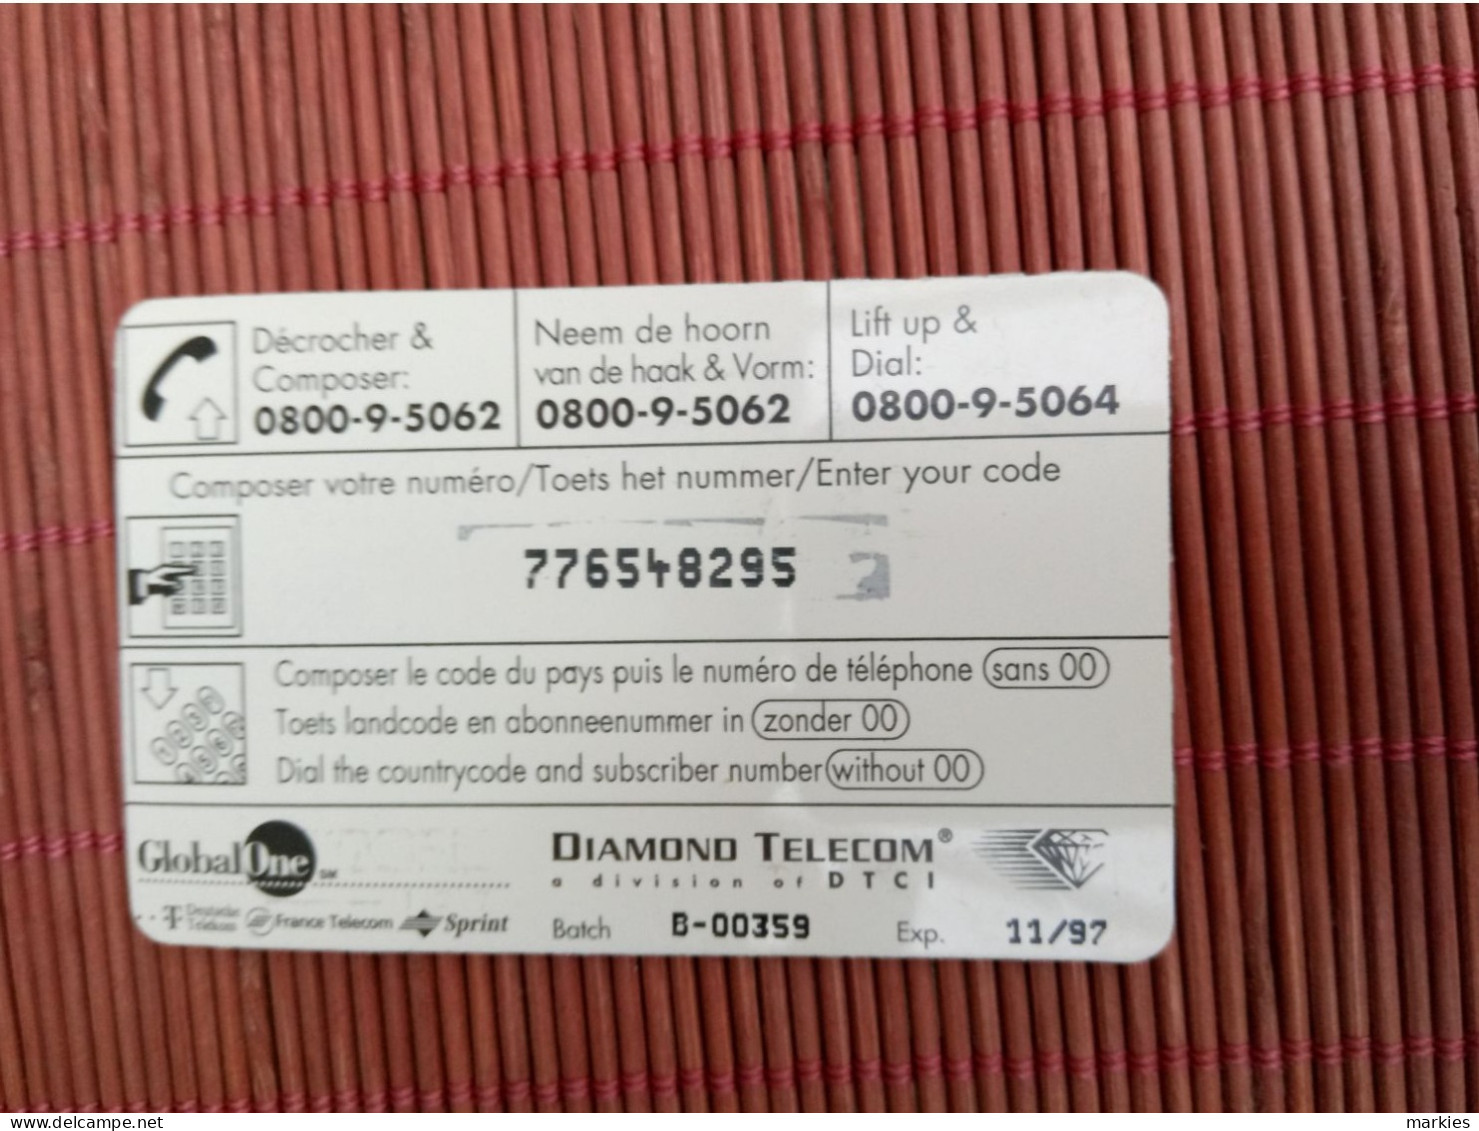 Diamond Telecom With Golbal One Logo On Bakside 2 Phtos  Used Rare ! - [2] Tarjetas Móviles, Recargos & Prepagadas